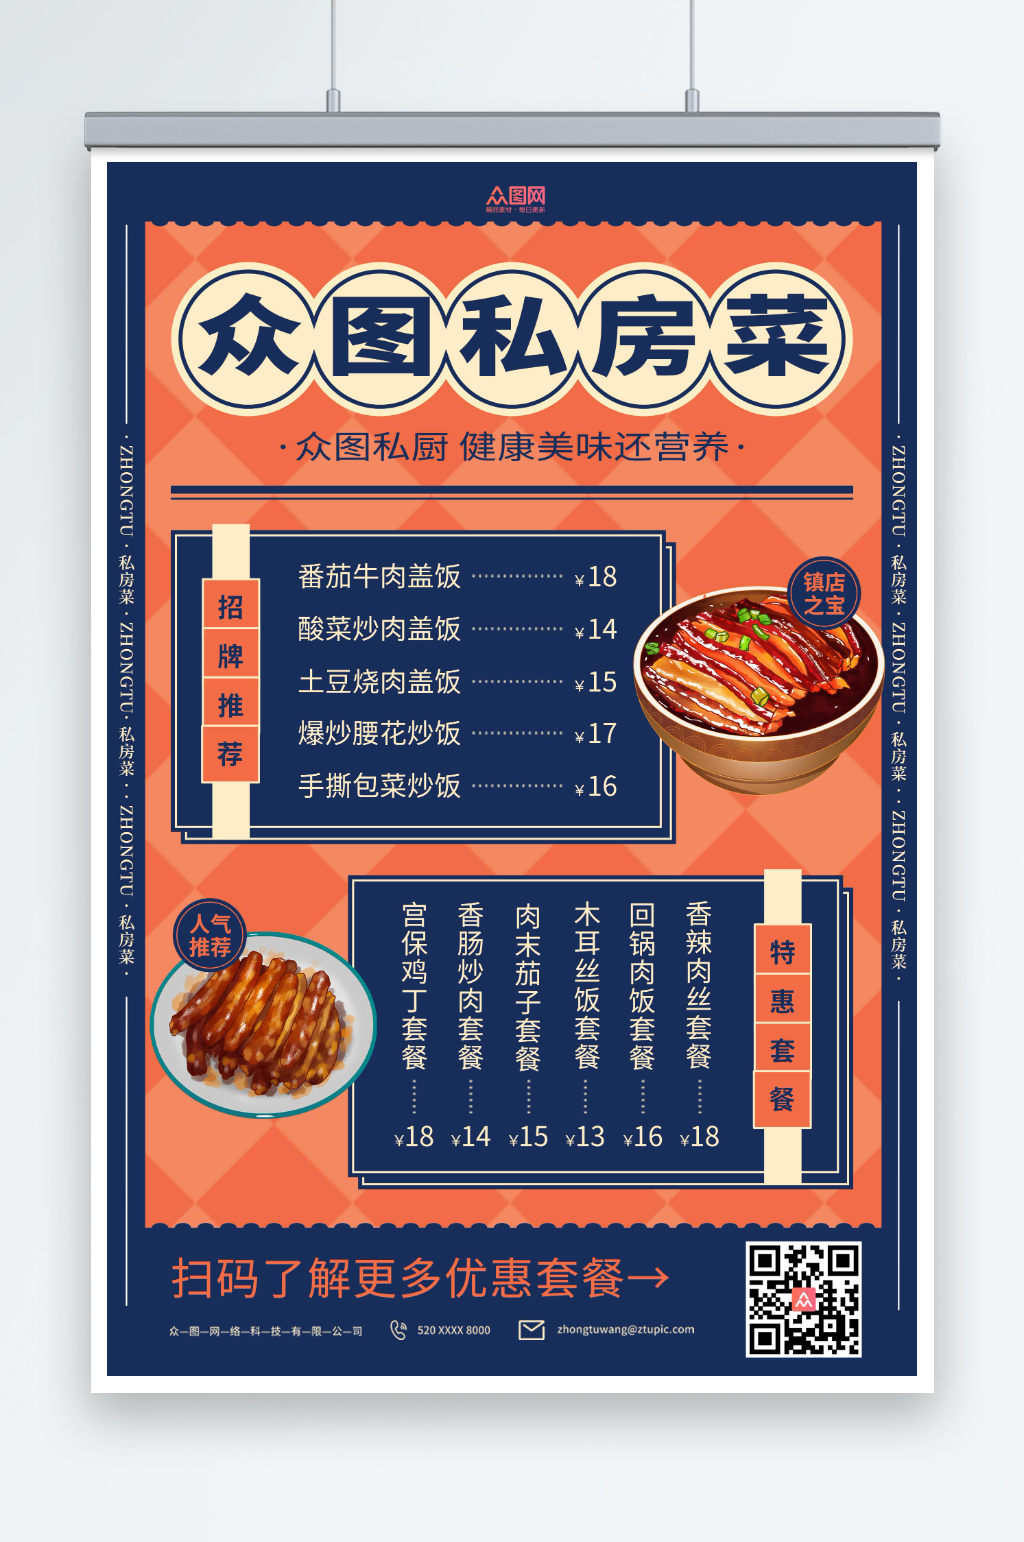 北京绿茶餐厅菜单图片